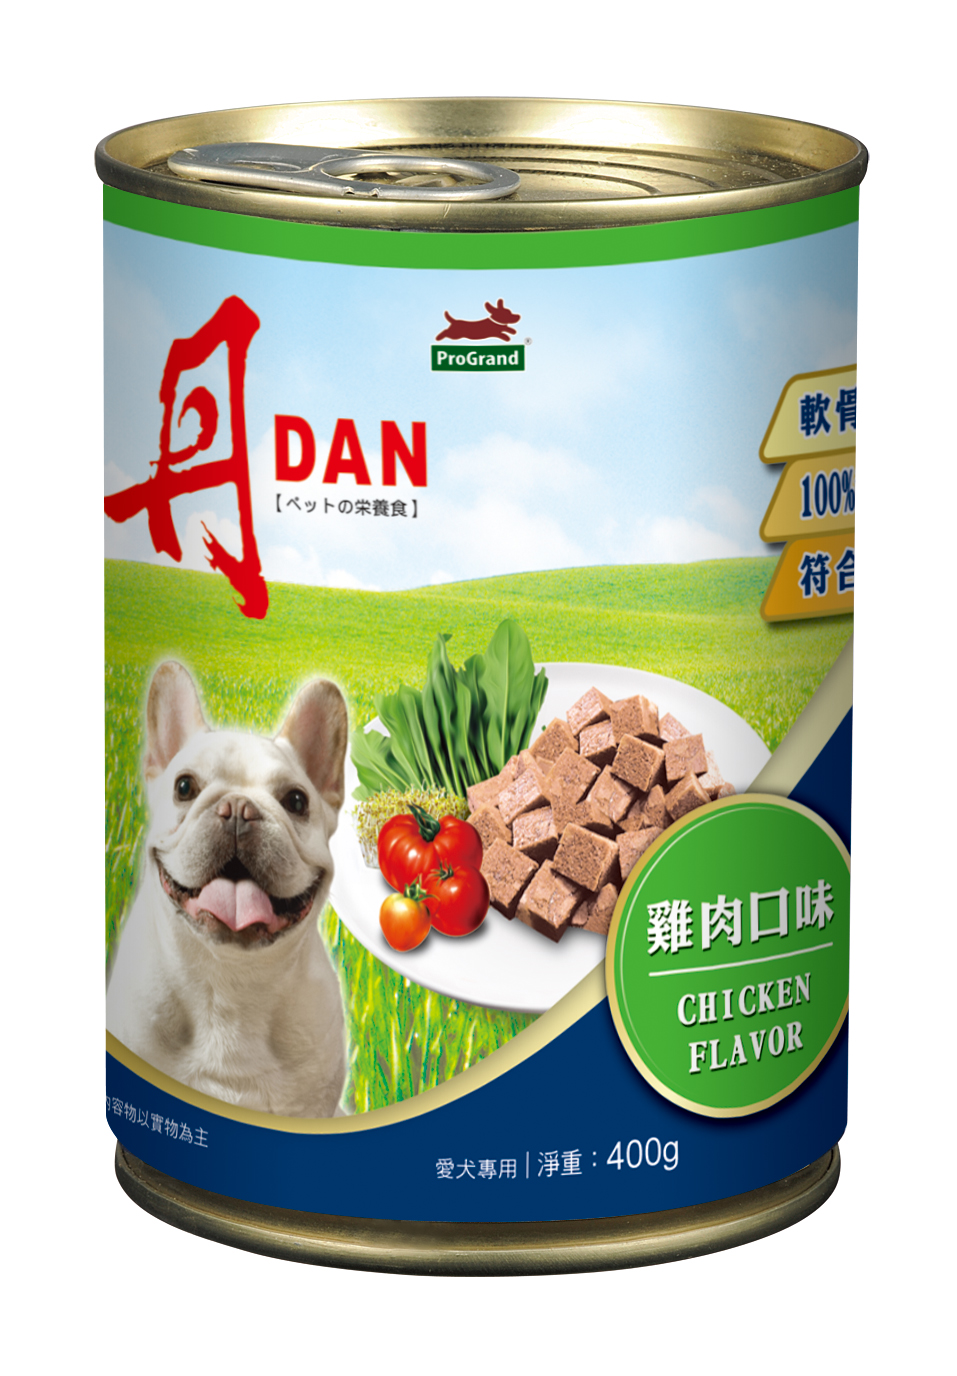 丹DAN 愛犬罐頭雞肉口味
DAN Canned Dog Food - Chicken Flavor